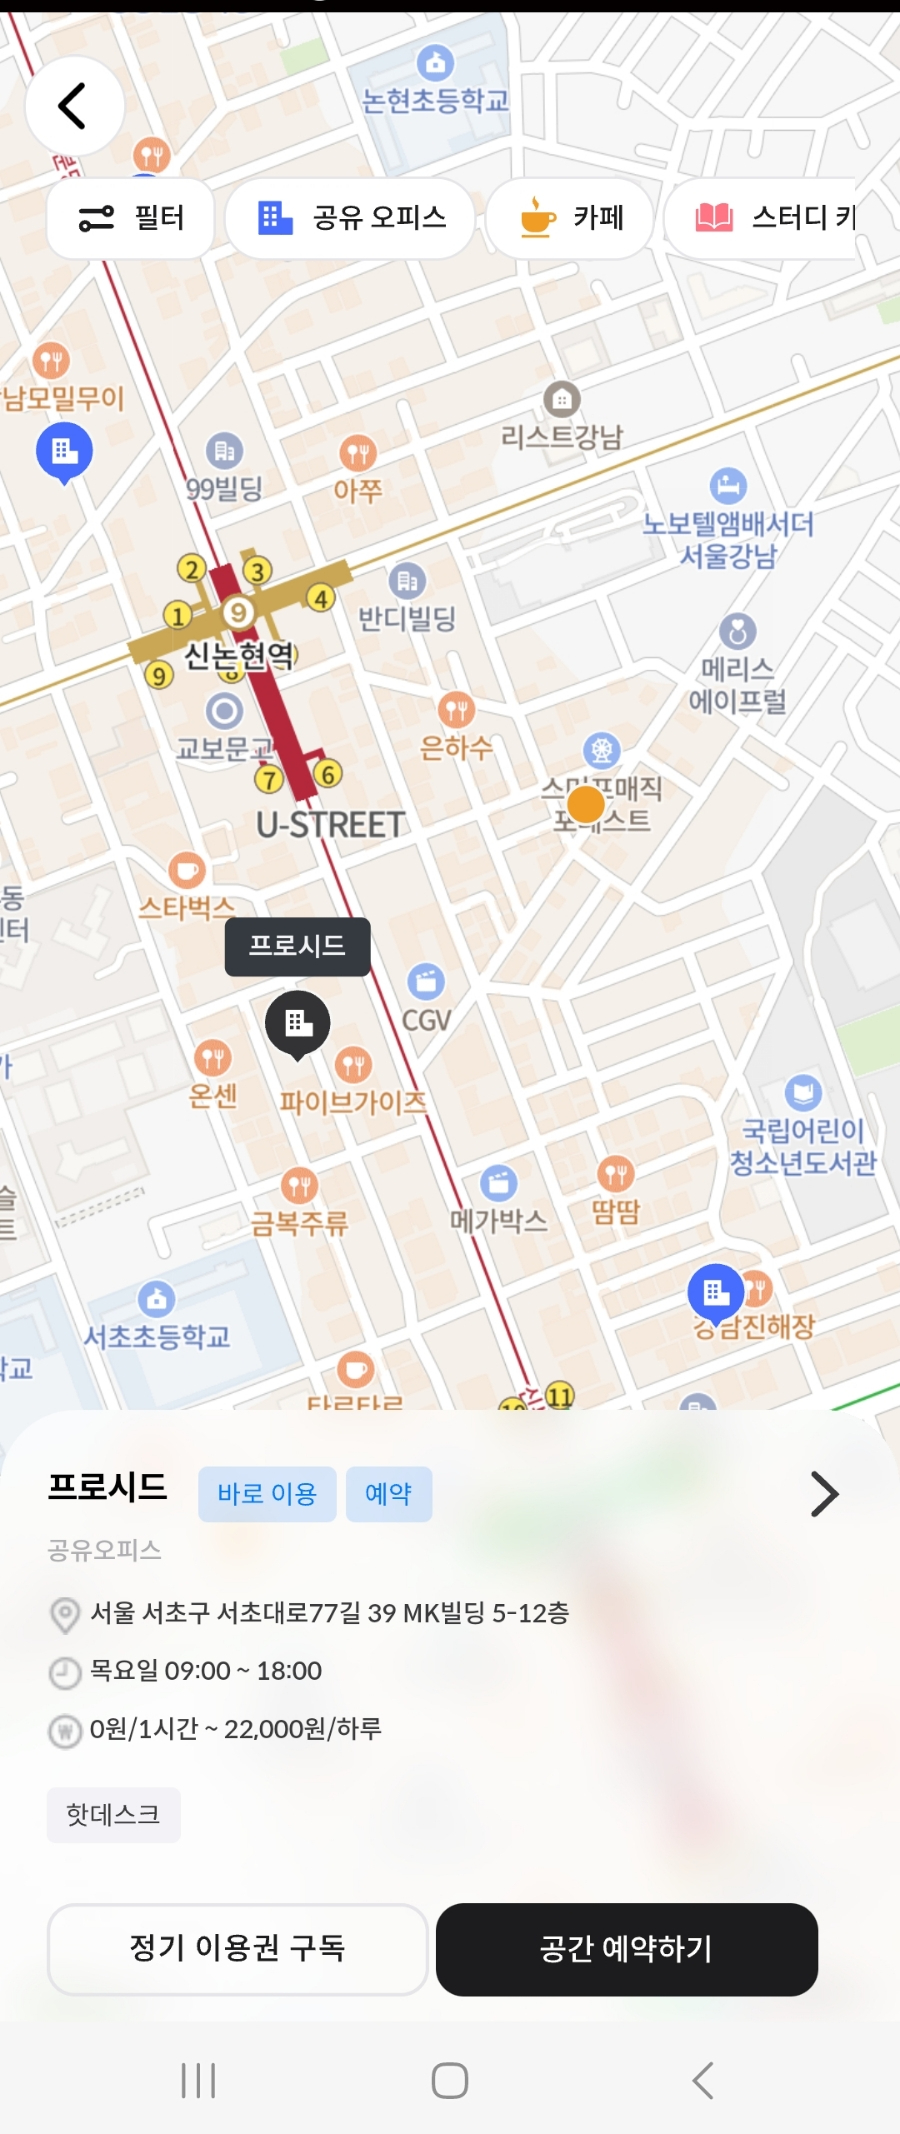 강남역 스터디카페 추천 : '프로시드' 원루프 앱 활용해 합리적으로!